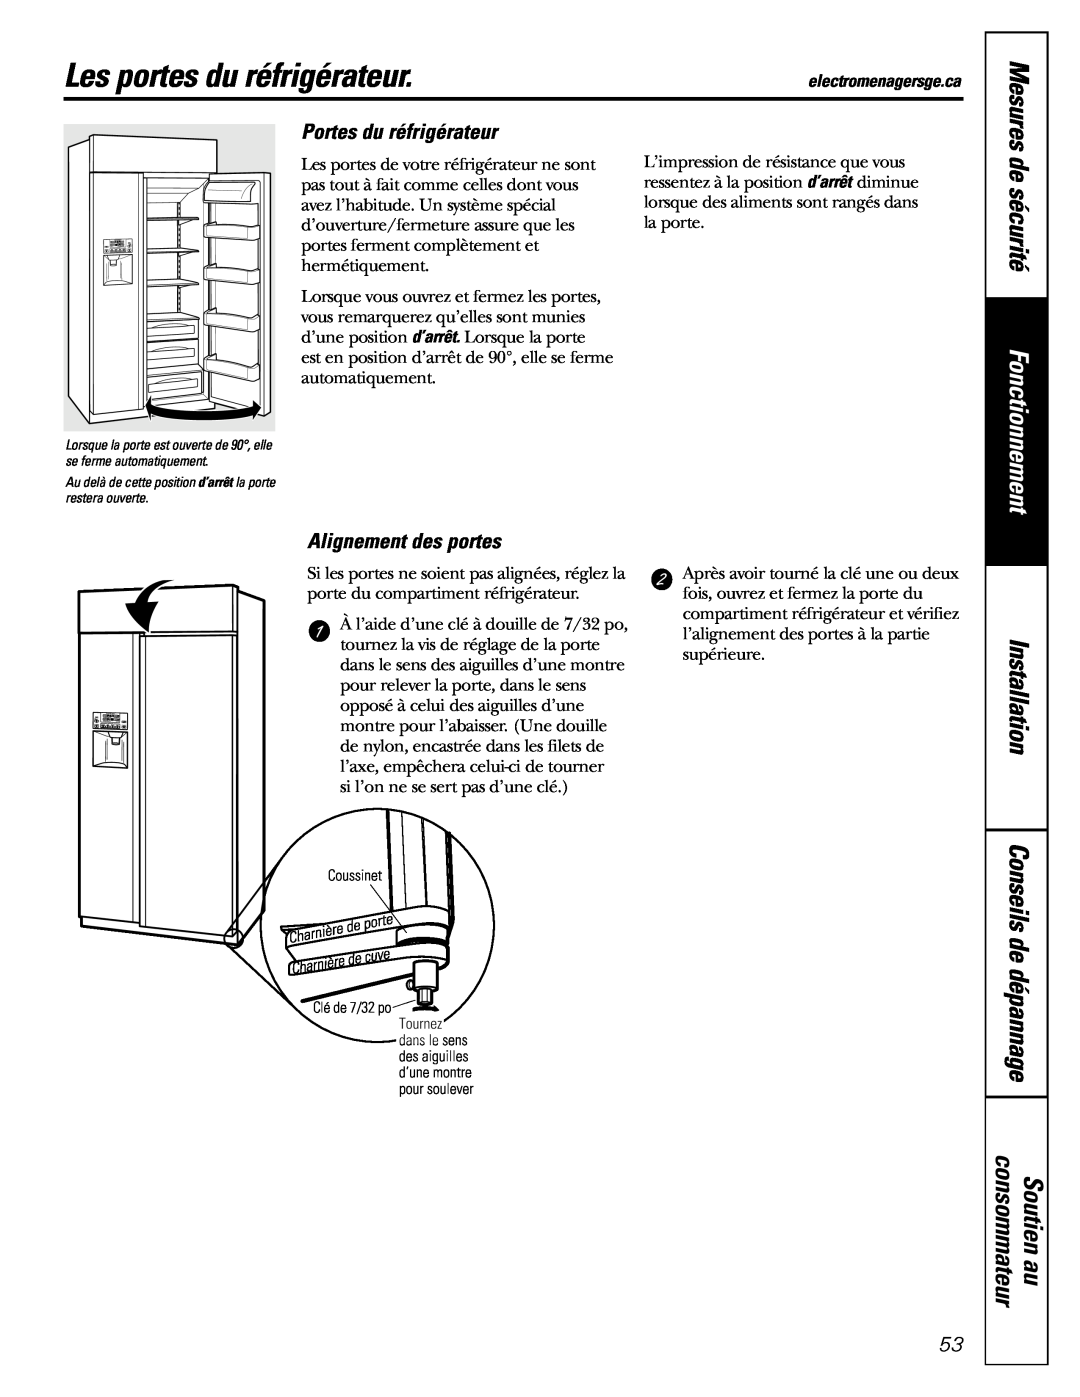 GE 48 Les portes du réfrigérateur, Portes du réfrigérateur, Alignement des portes, de sécurité, Soutien au, consommateur 